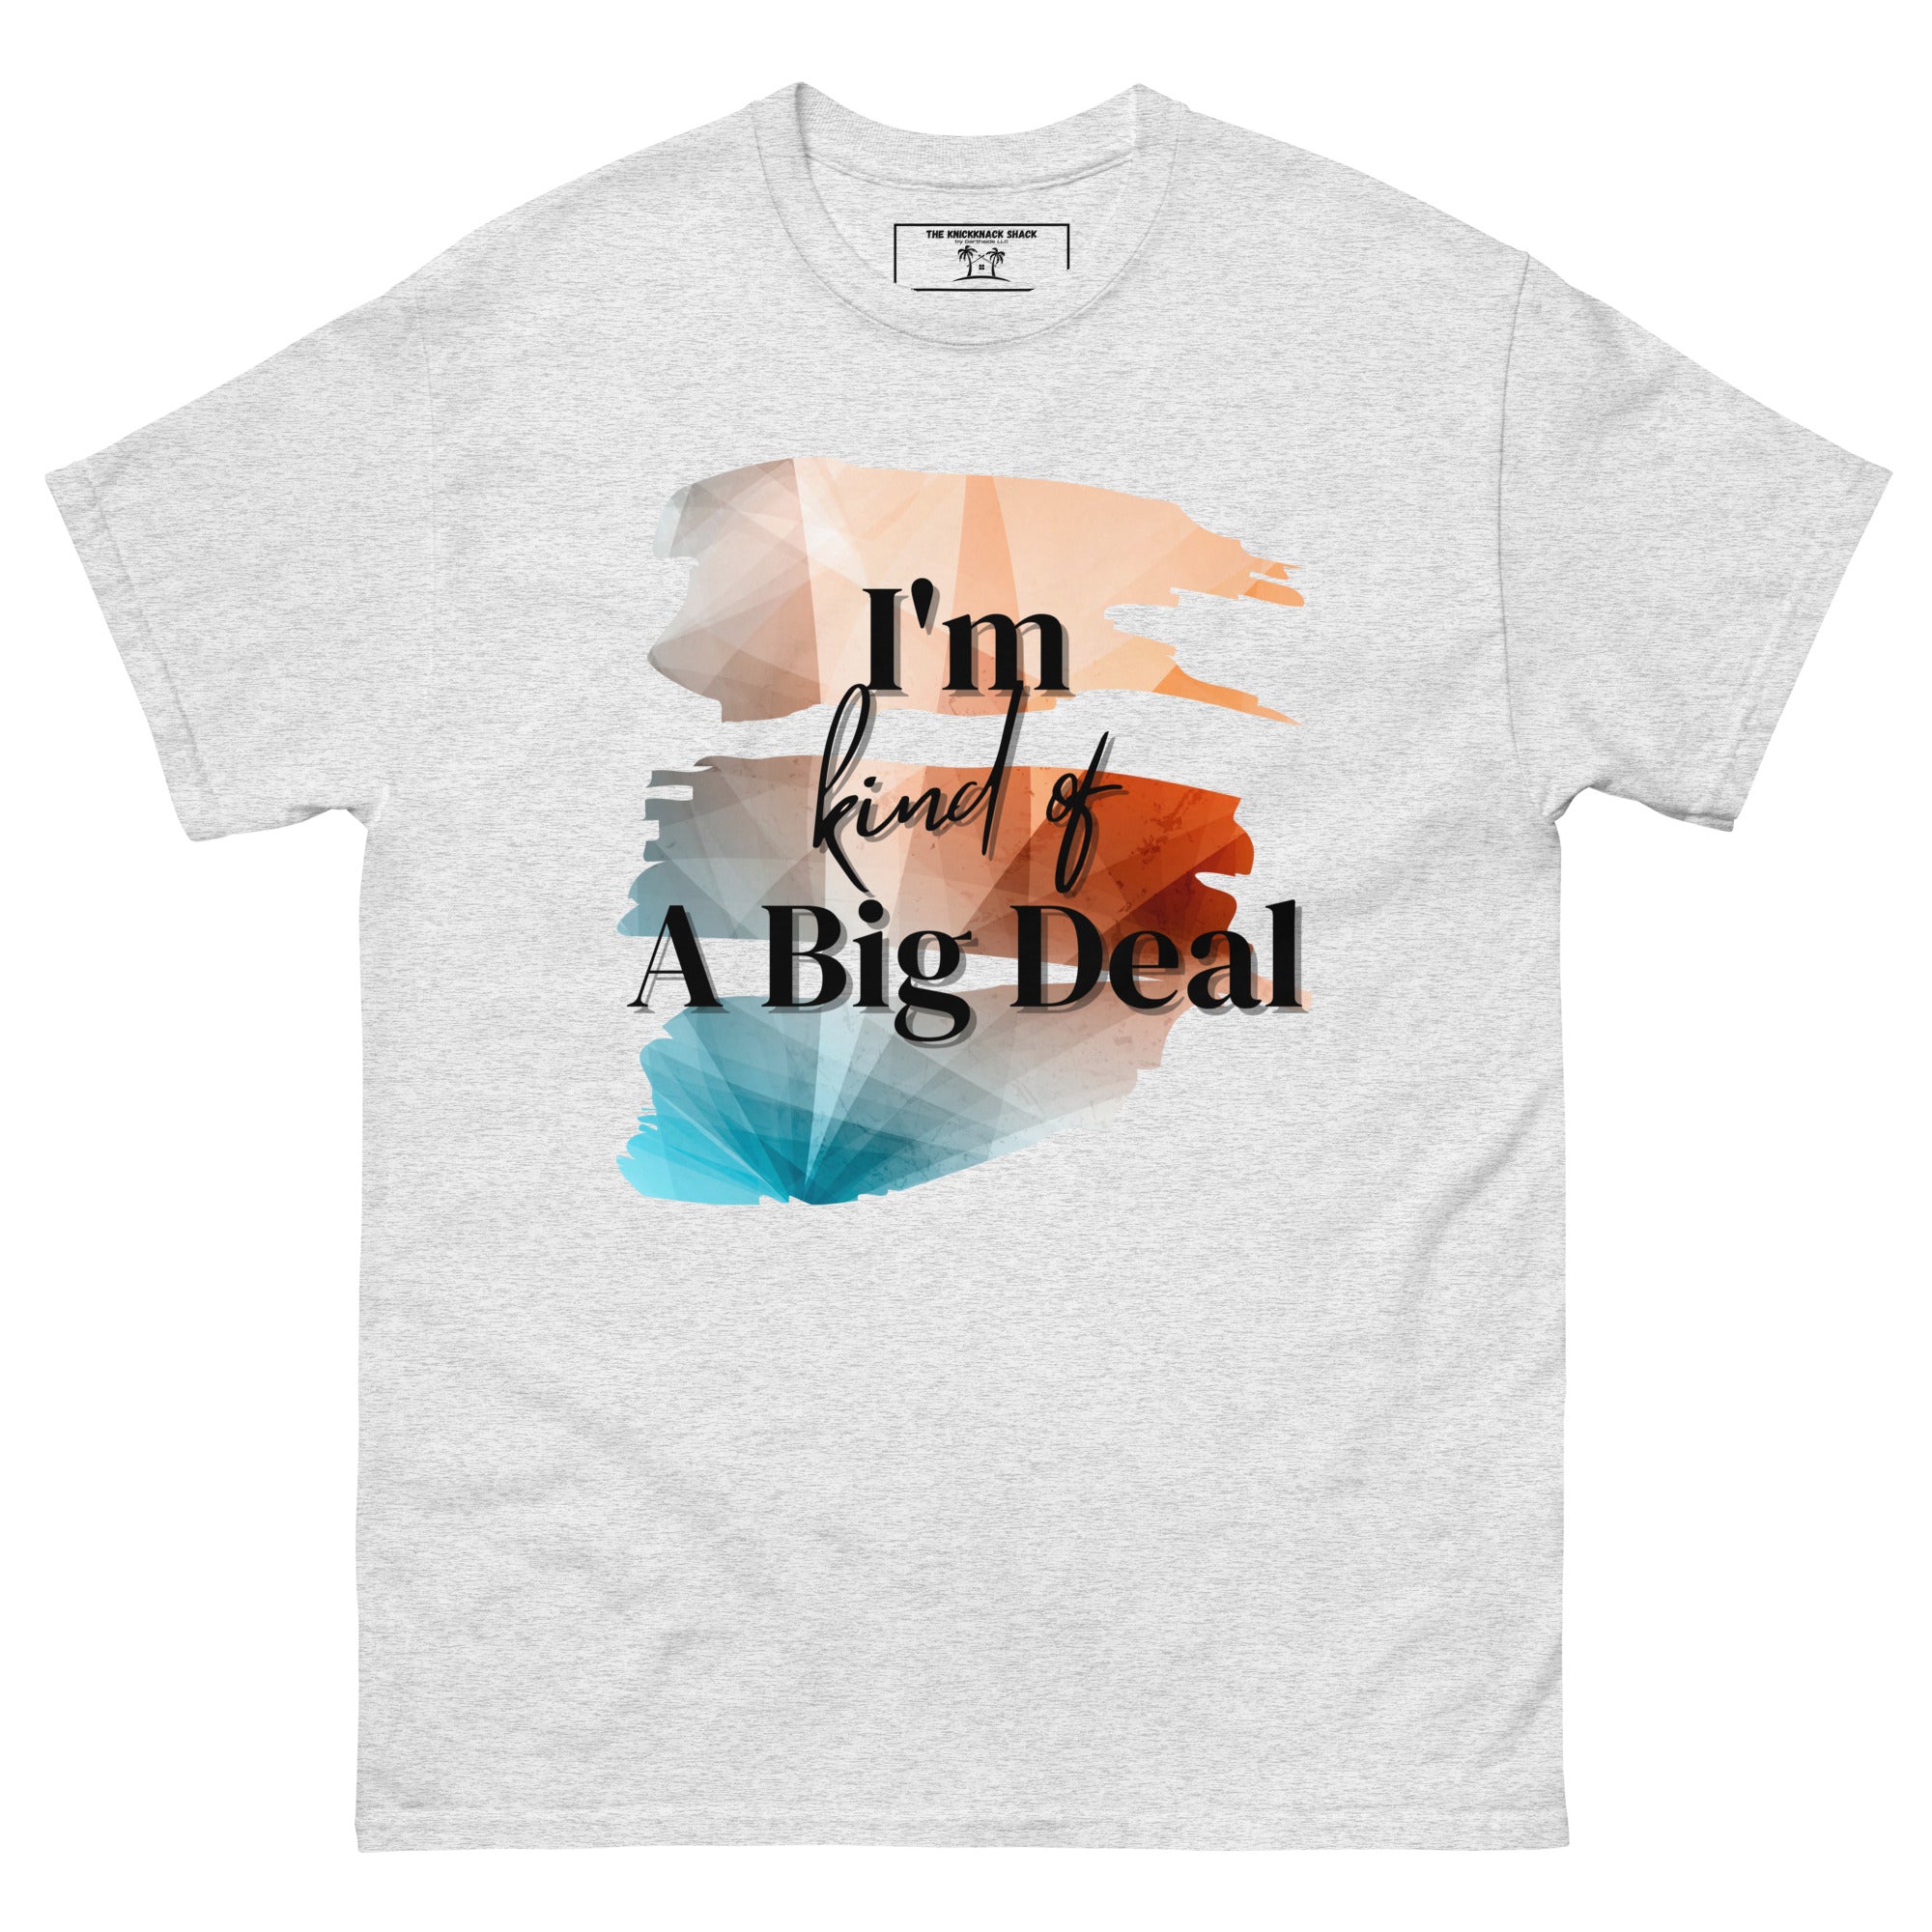 T-shirt classique - Big Deal (couleurs claires)